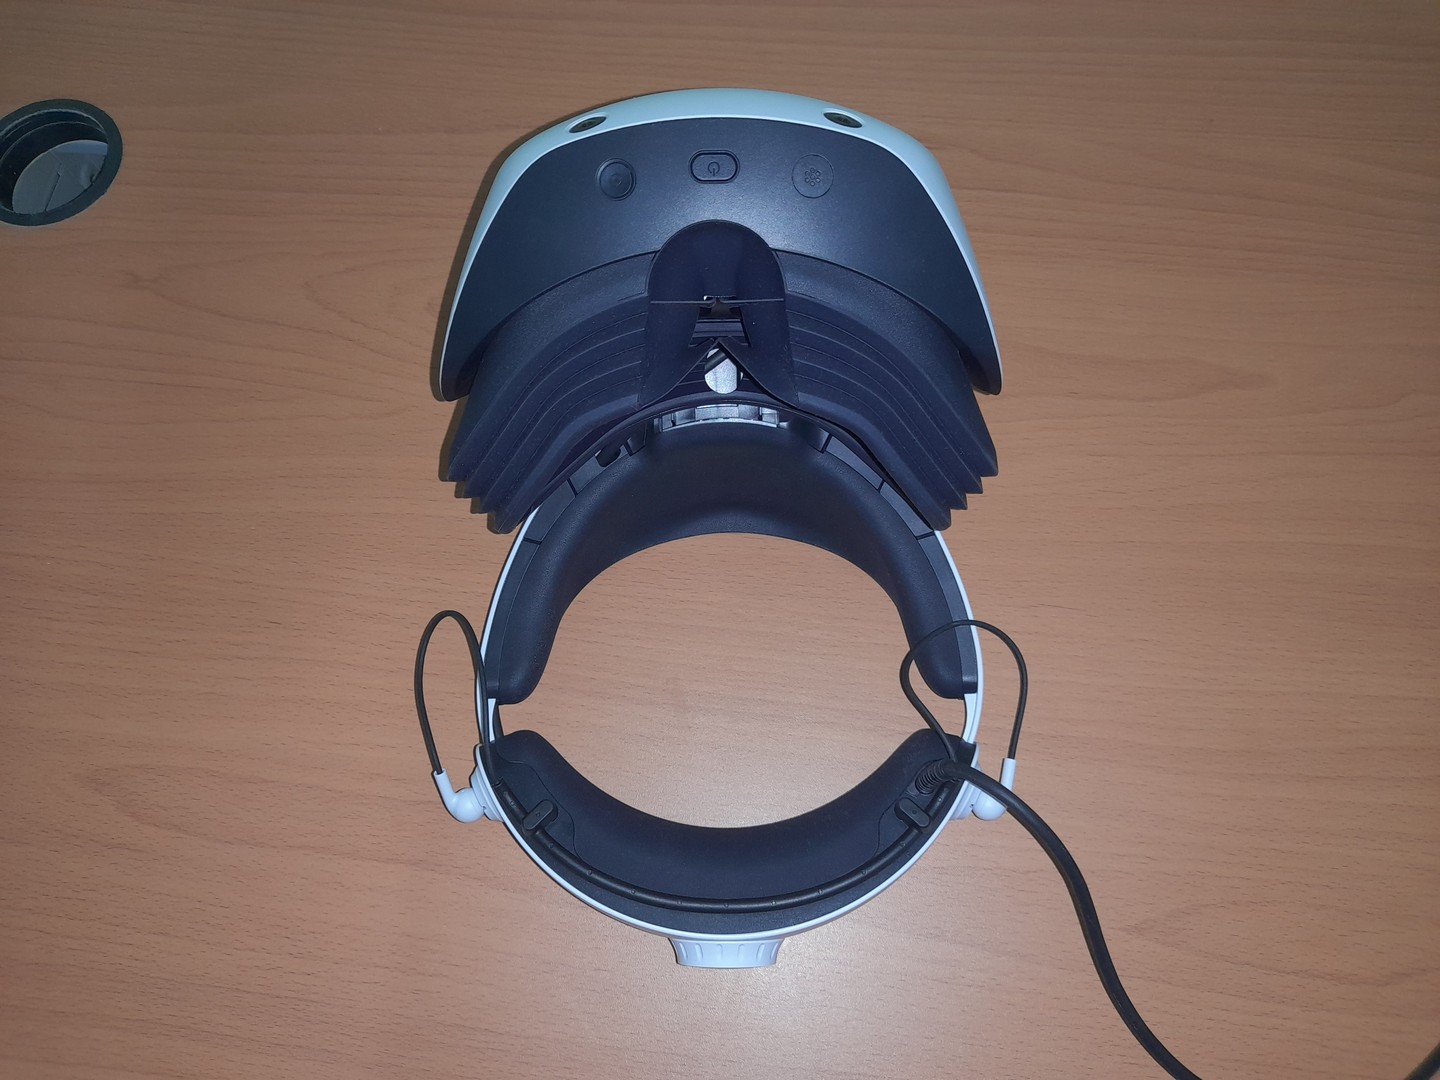 consolas y videojuegos - psvr2 : headset de realidad virtual para playstation 5 (3 horas de uso) 5